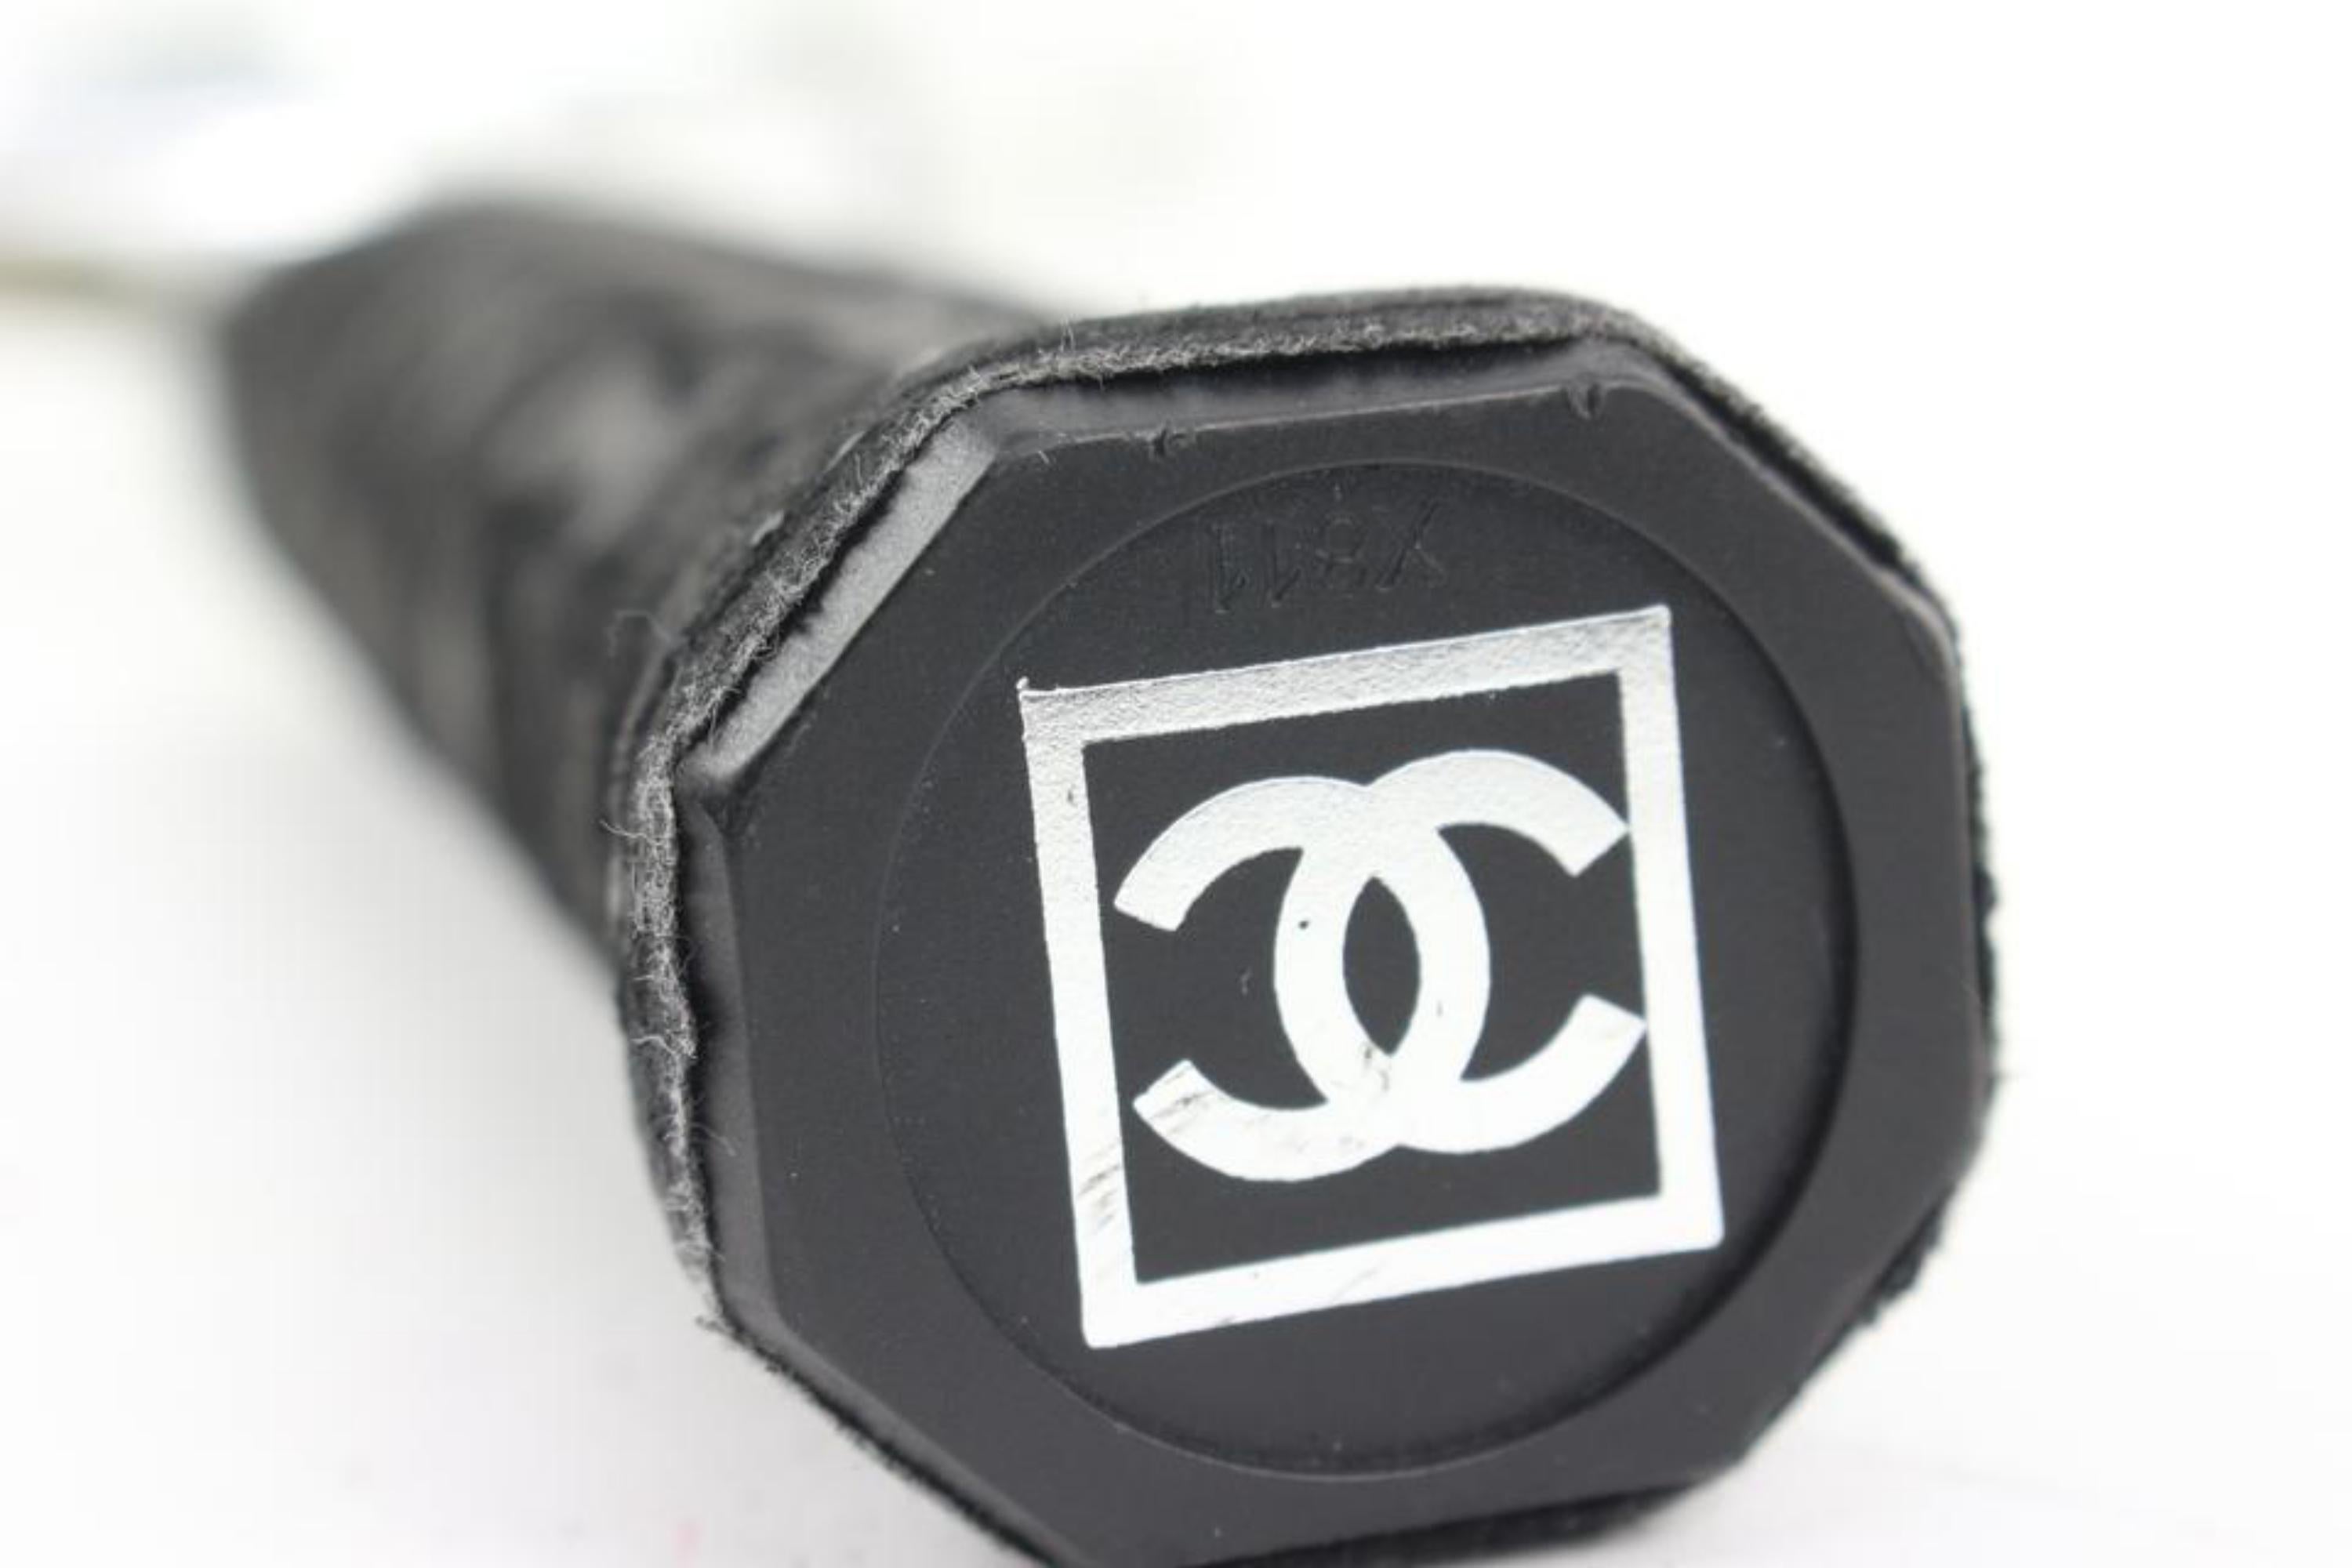 Chanel Rare CC Logo Raquette de Tennis Sports Racket with Carrying Case s210ck65
Mesures : Longueur :  largeur de 11